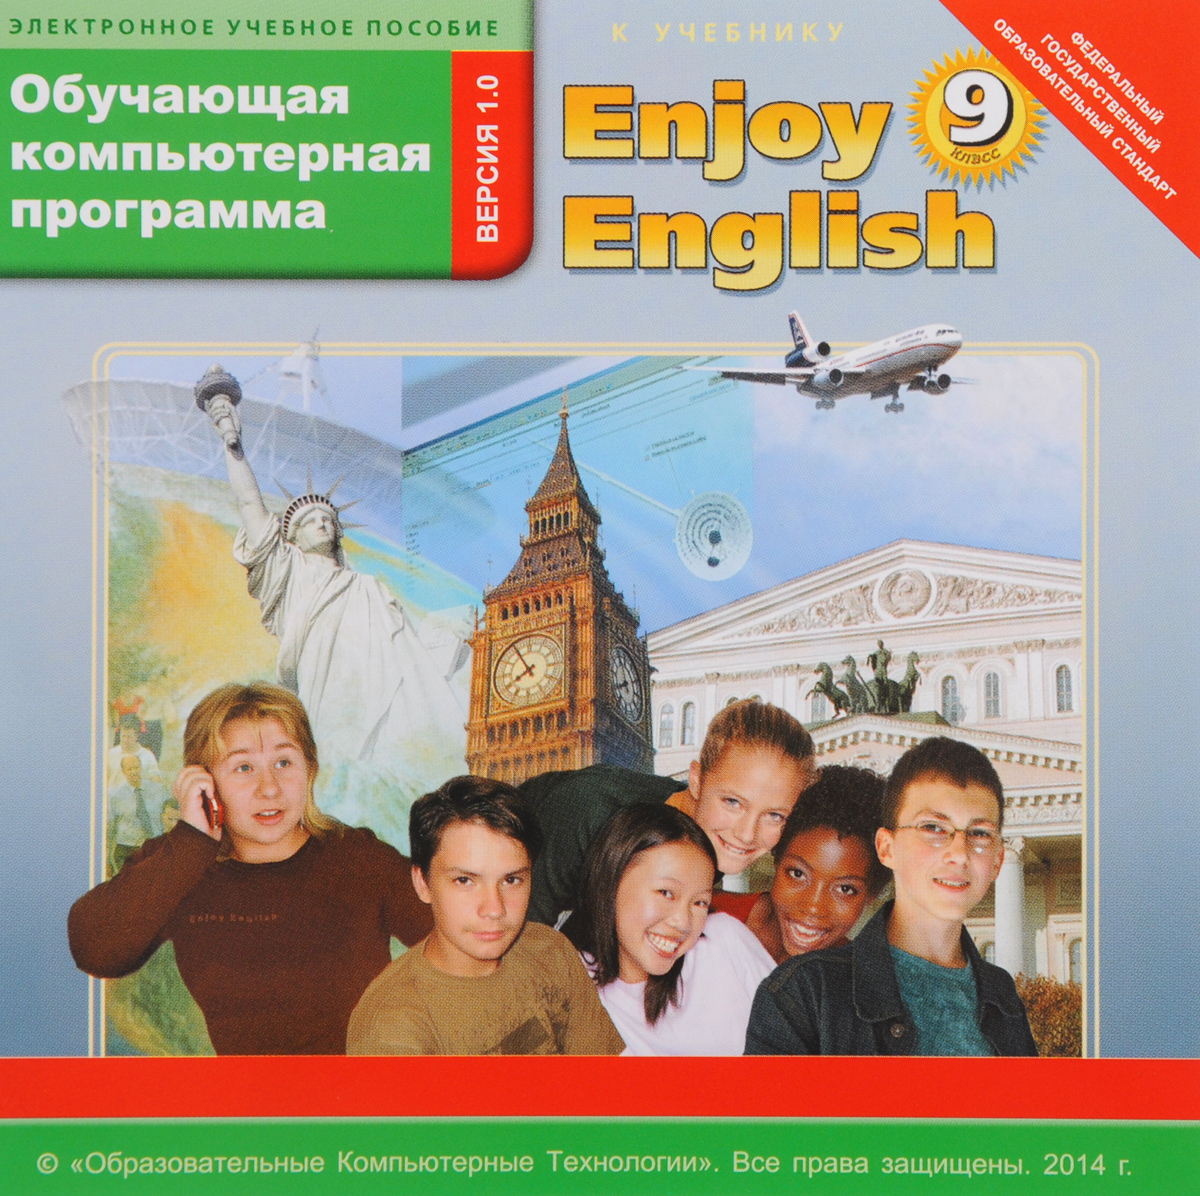 9 английская версия. Английский язык enjoy English. Учебник английского языка enjoy English. Обучающие программы английский язык. Enjoy English 9 класс.